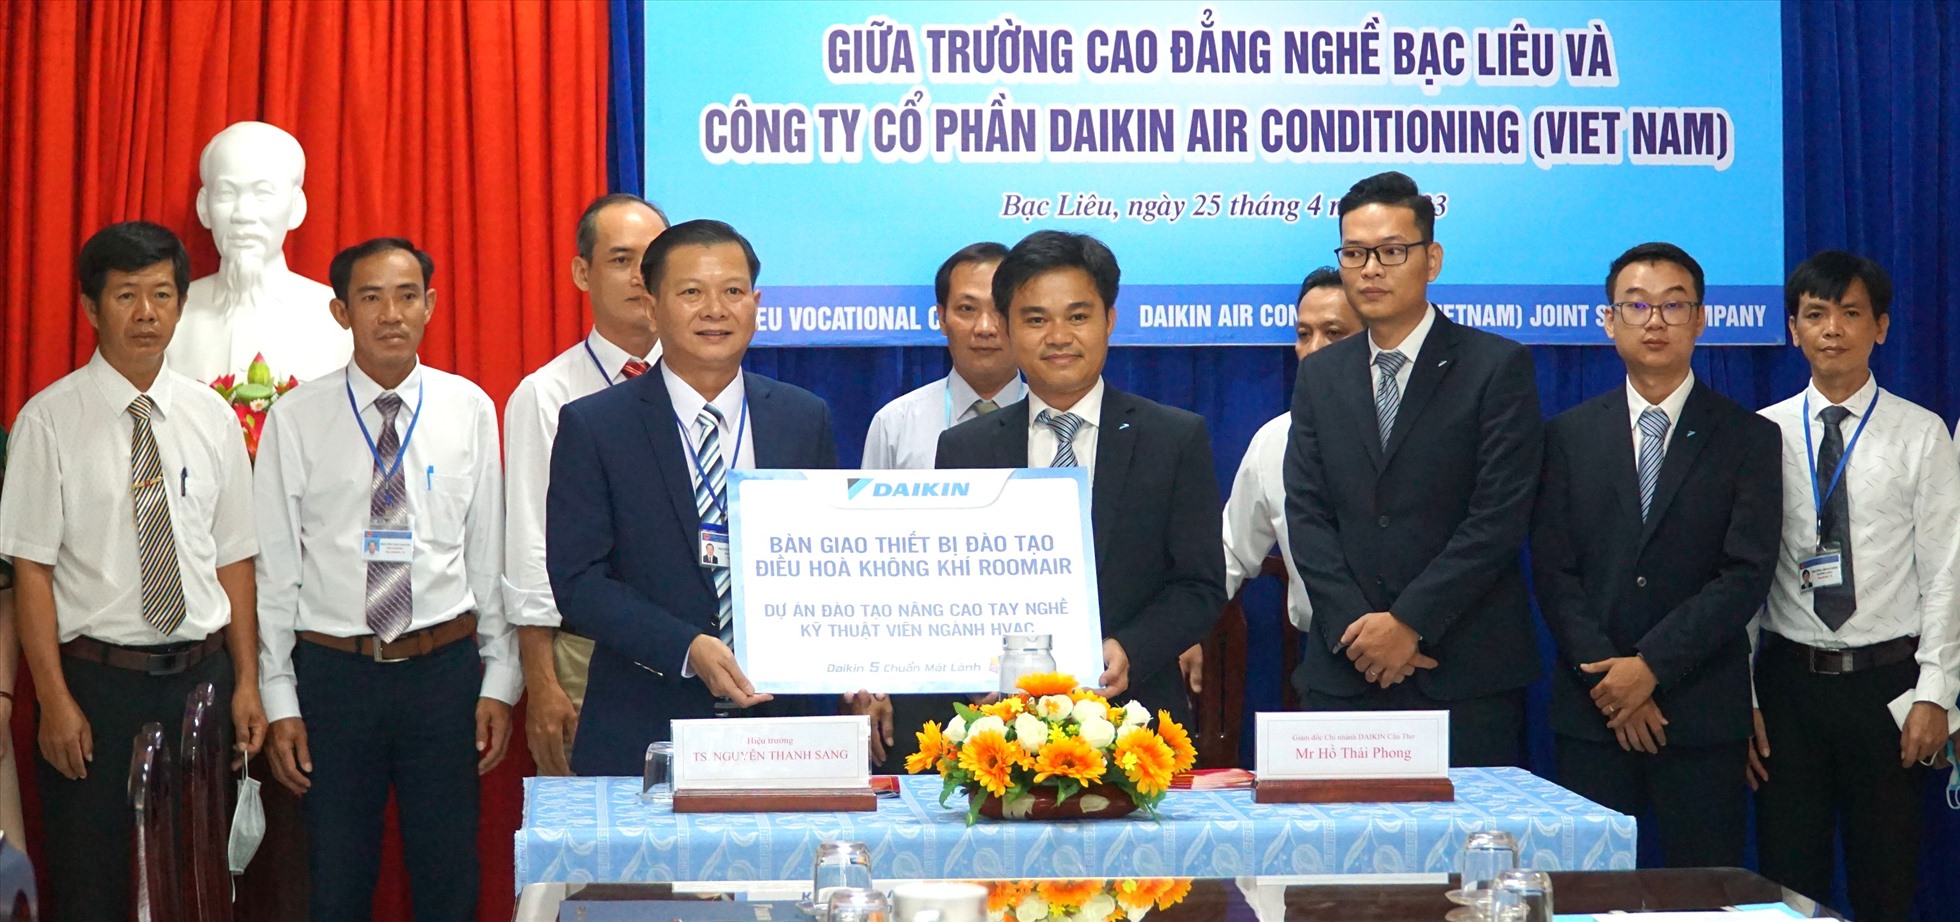 Cổ phần Daikin Air Conditioning (Việt Nam) tài trợ chương trình đào tạo với Trường Cao đẳng Nghề Bạc Liêu. Ảnh: Nhật Hồ